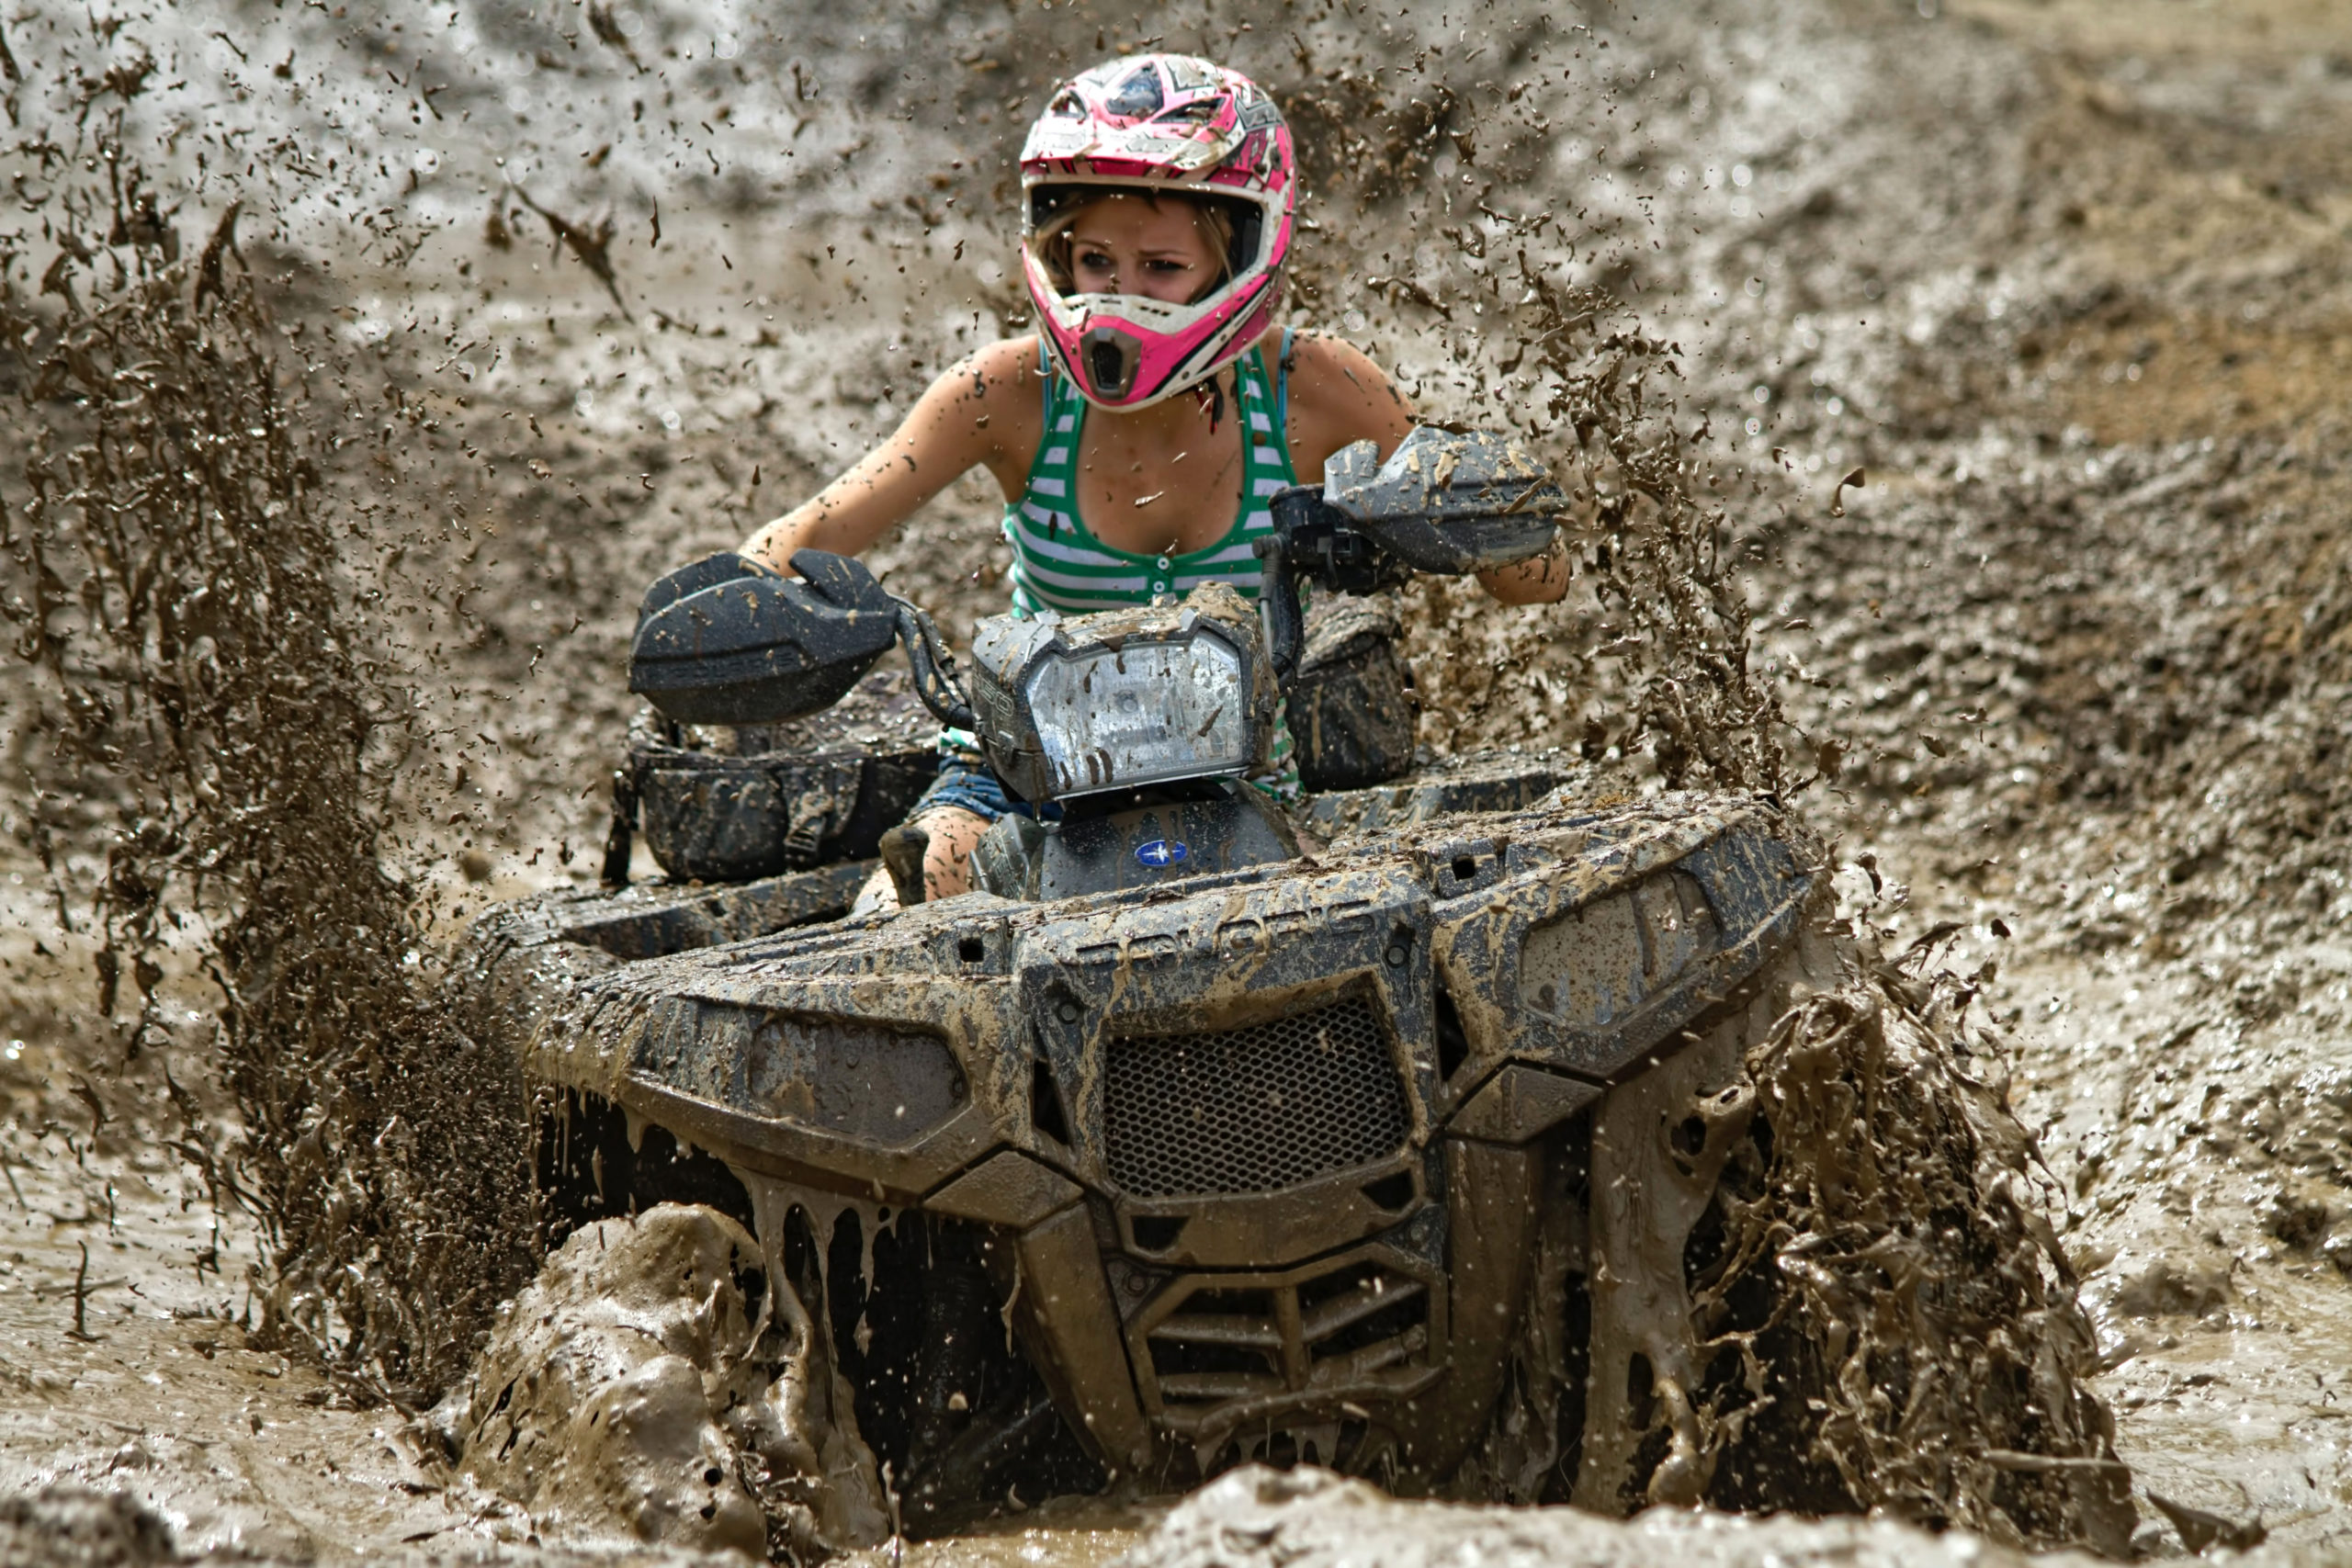 femme sur un quad dans la boue